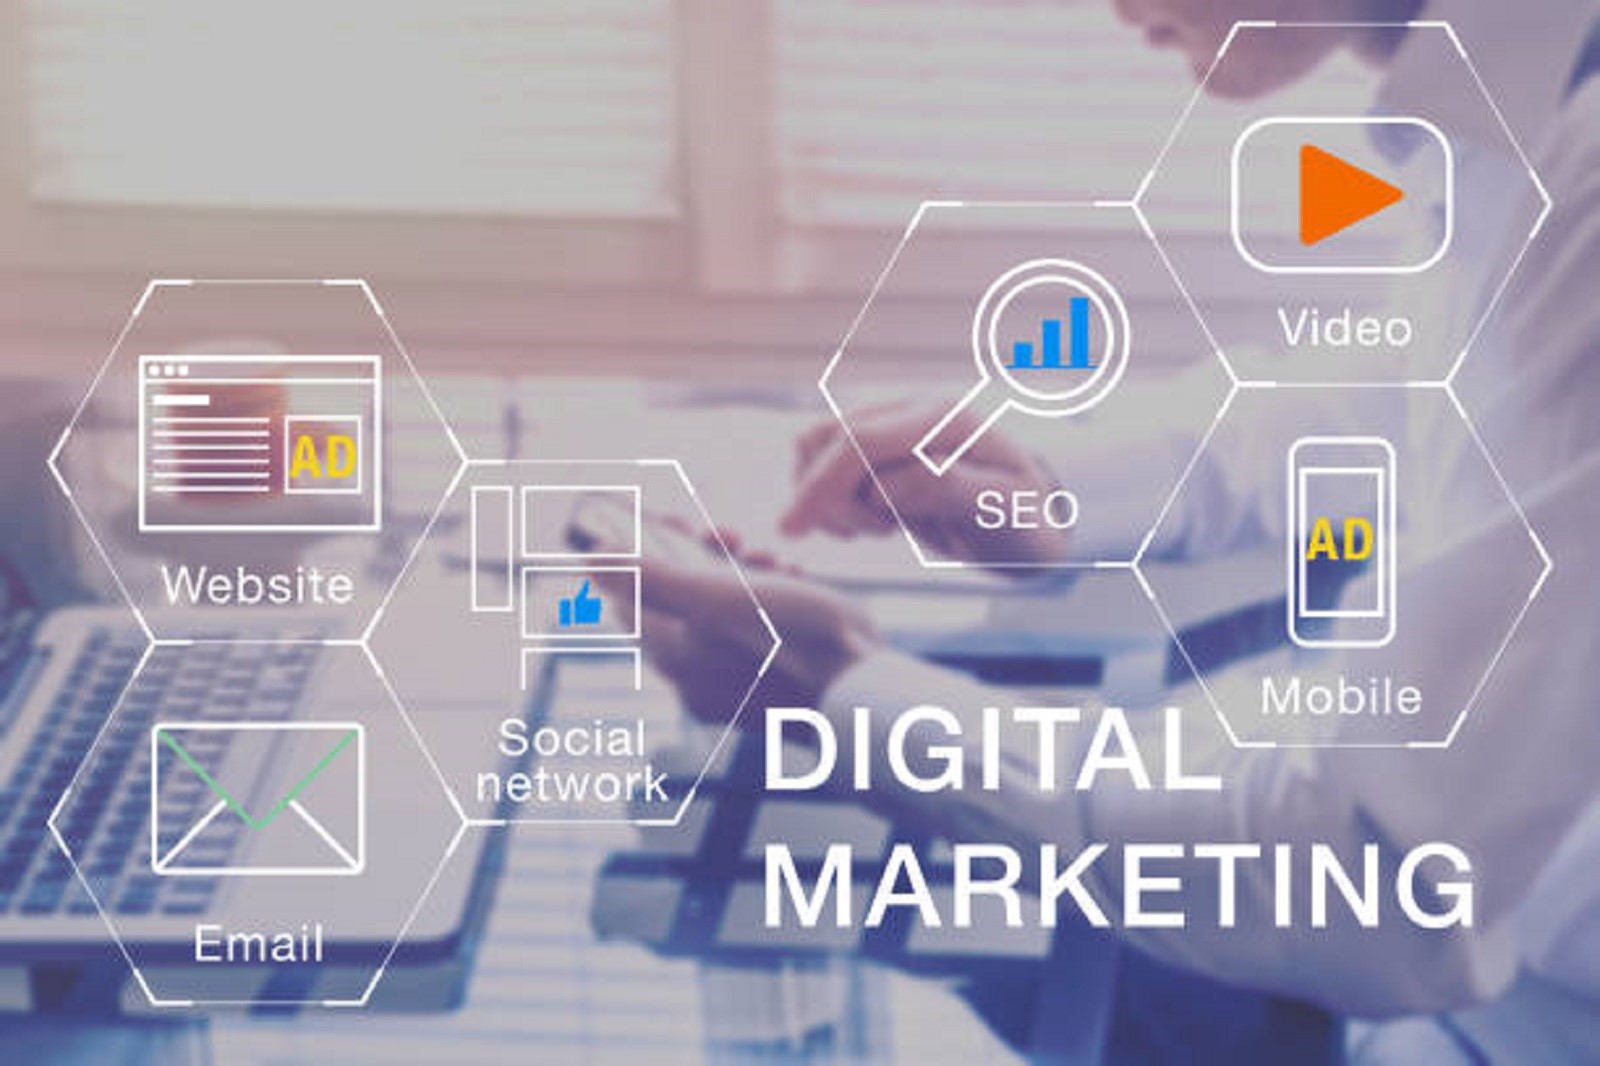 How Can I Do Digital Marketing?